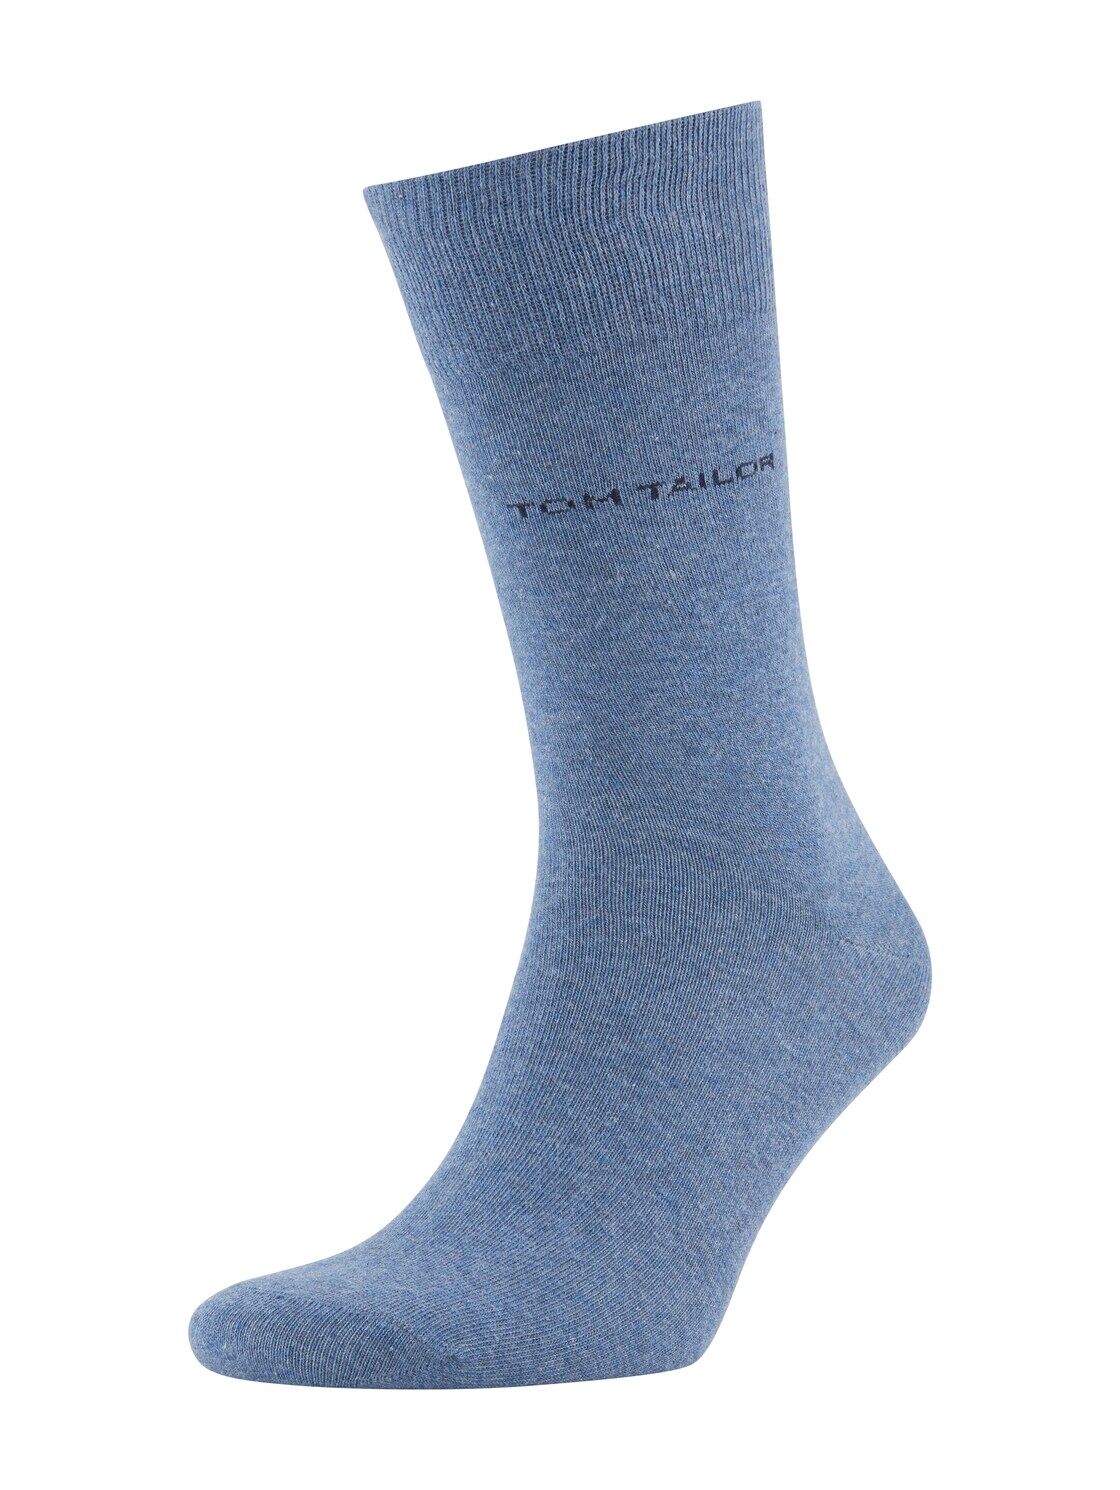 TOM TAILOR Herren Basic Socken im Doppelpack, blau, unifarben, Gr.43-46